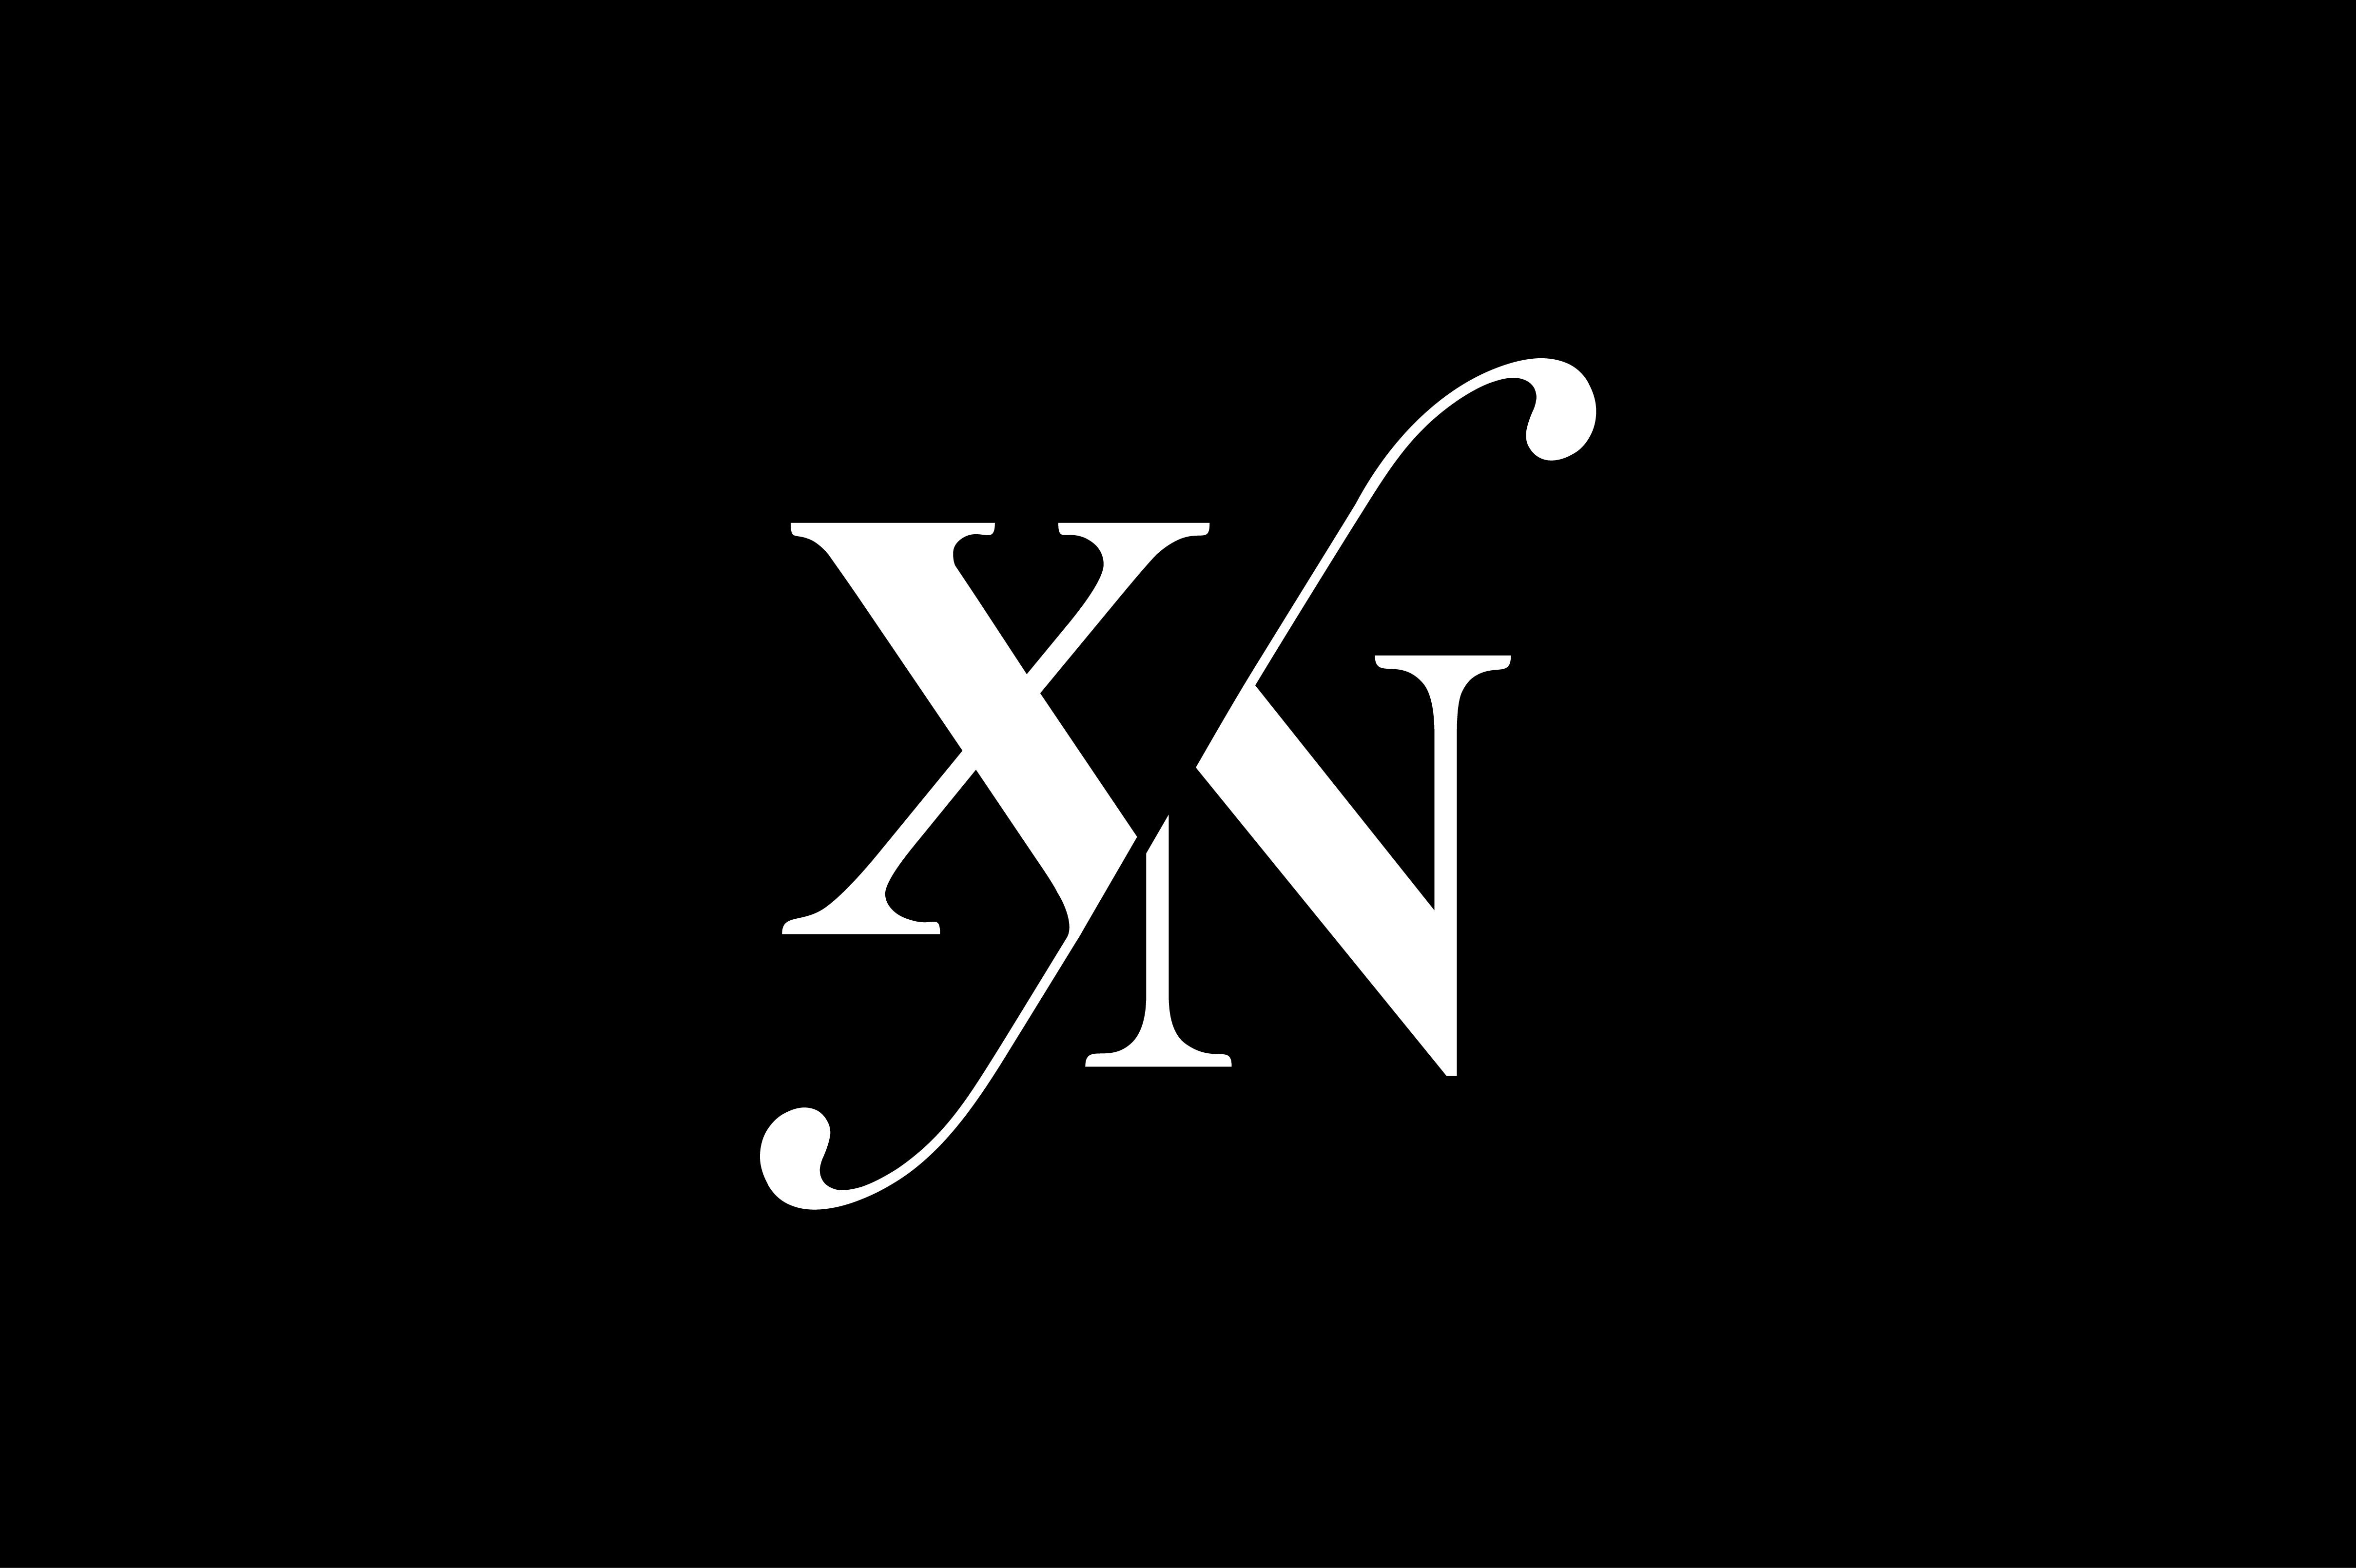 Xi буква. Логотип xn. Монограмма GK. X100 логотип. Xn*x³.